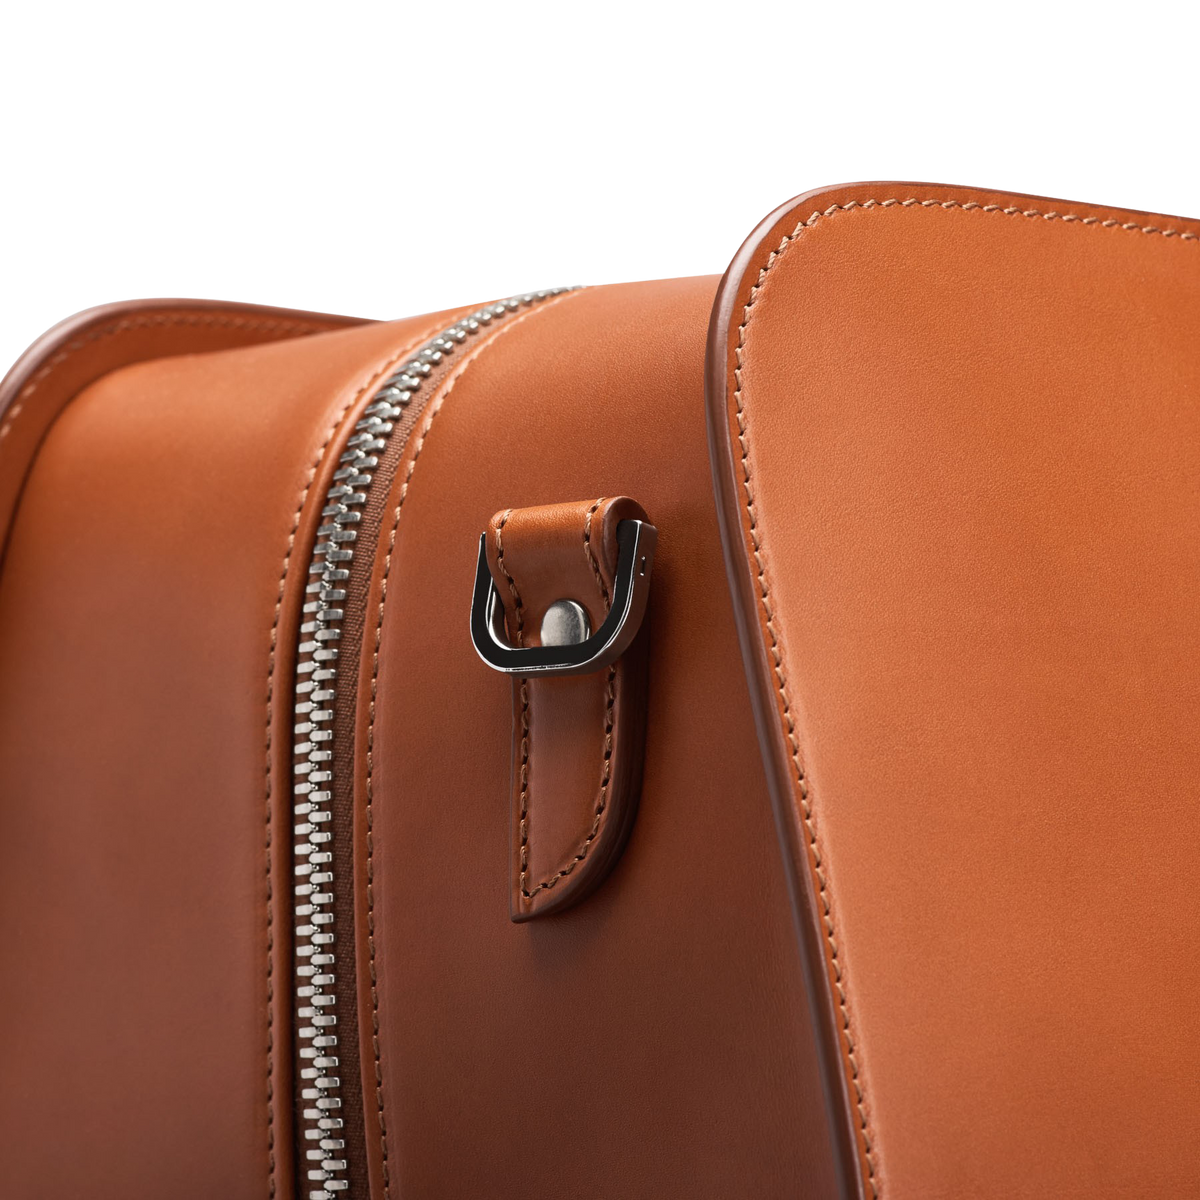 Tip: Louis Vuitton Handbag (Cognac)